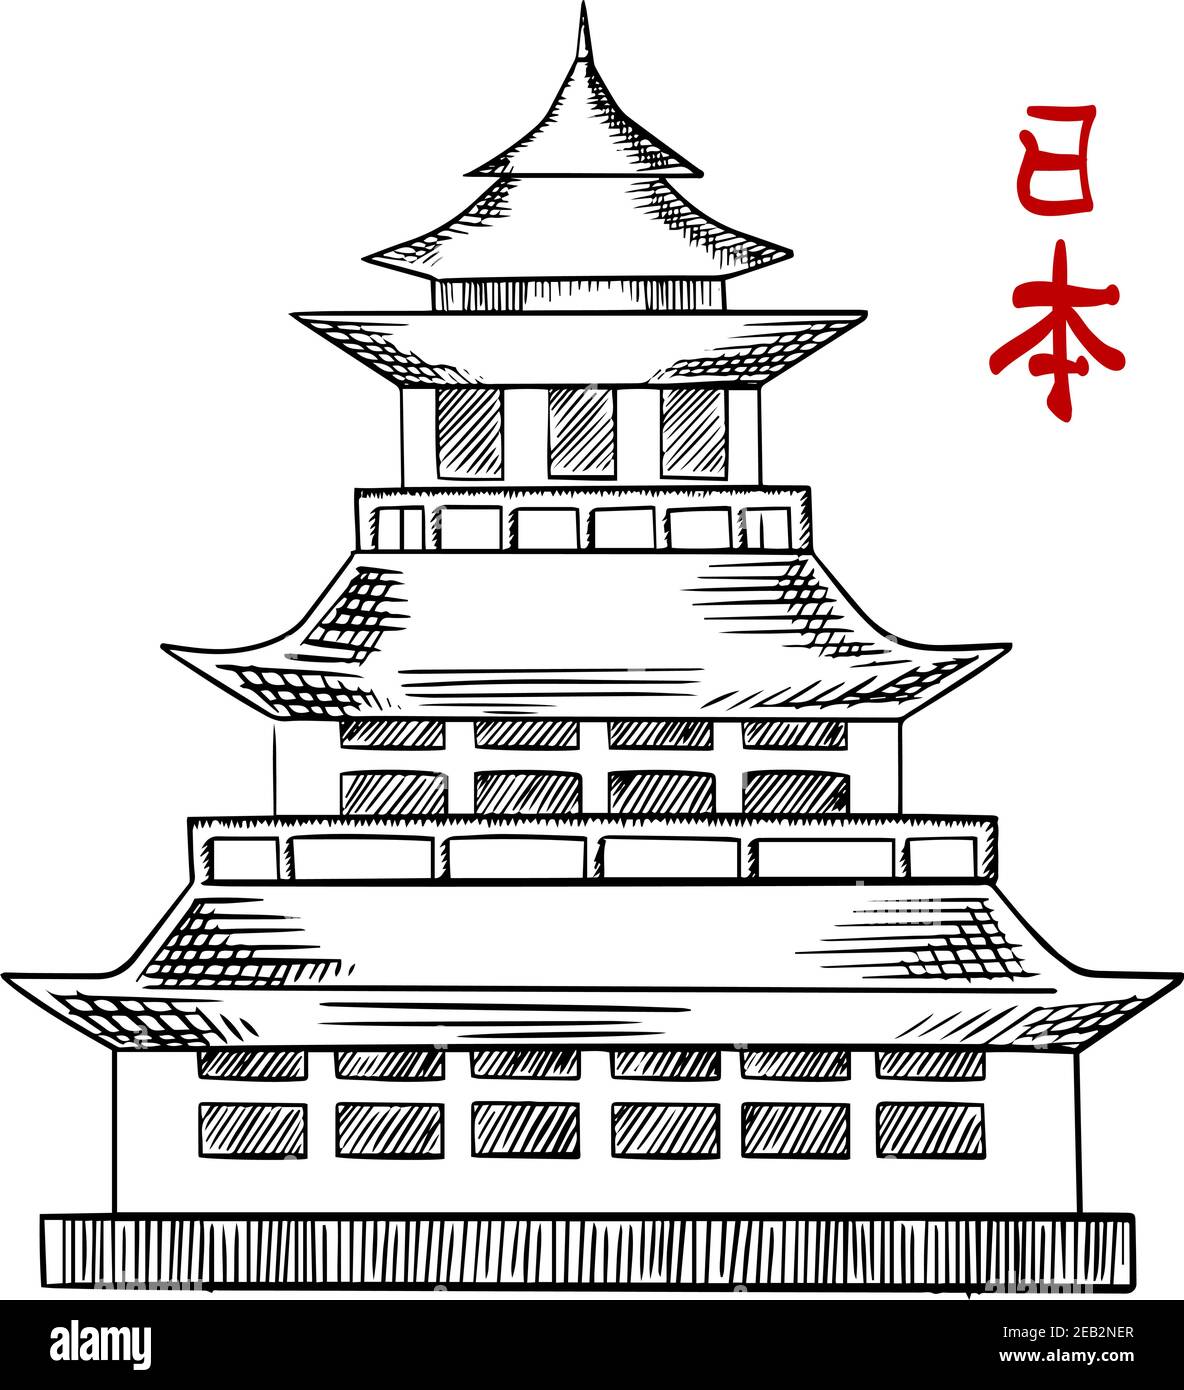 Tour de pagode japonaise traditionnelle avec toits incurvés et balcons, isolée sur fond blanc. Style d'esquisse Illustration de Vecteur